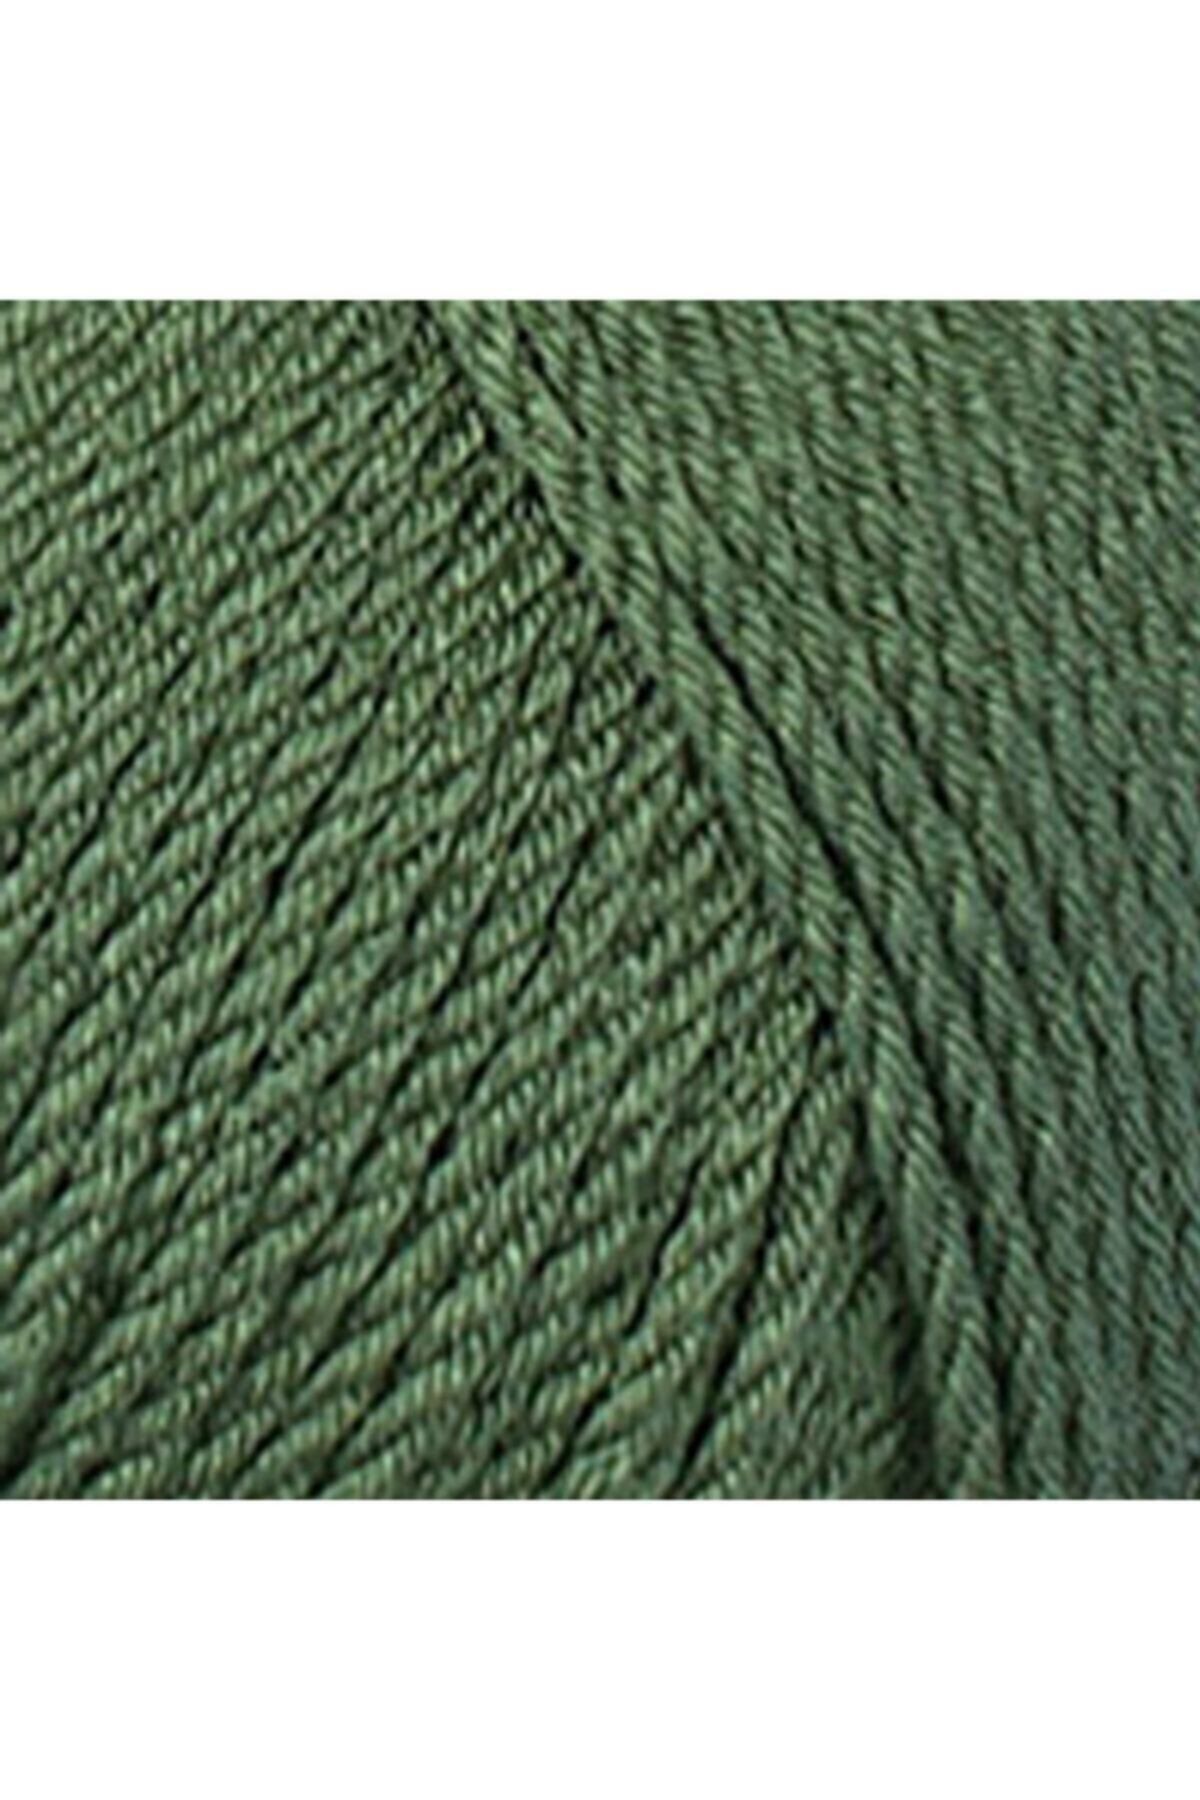 Pırlanta 11253 (Haki Yeşil) Amigurumi El Örgü Ipi/yünü 1 Adet_1